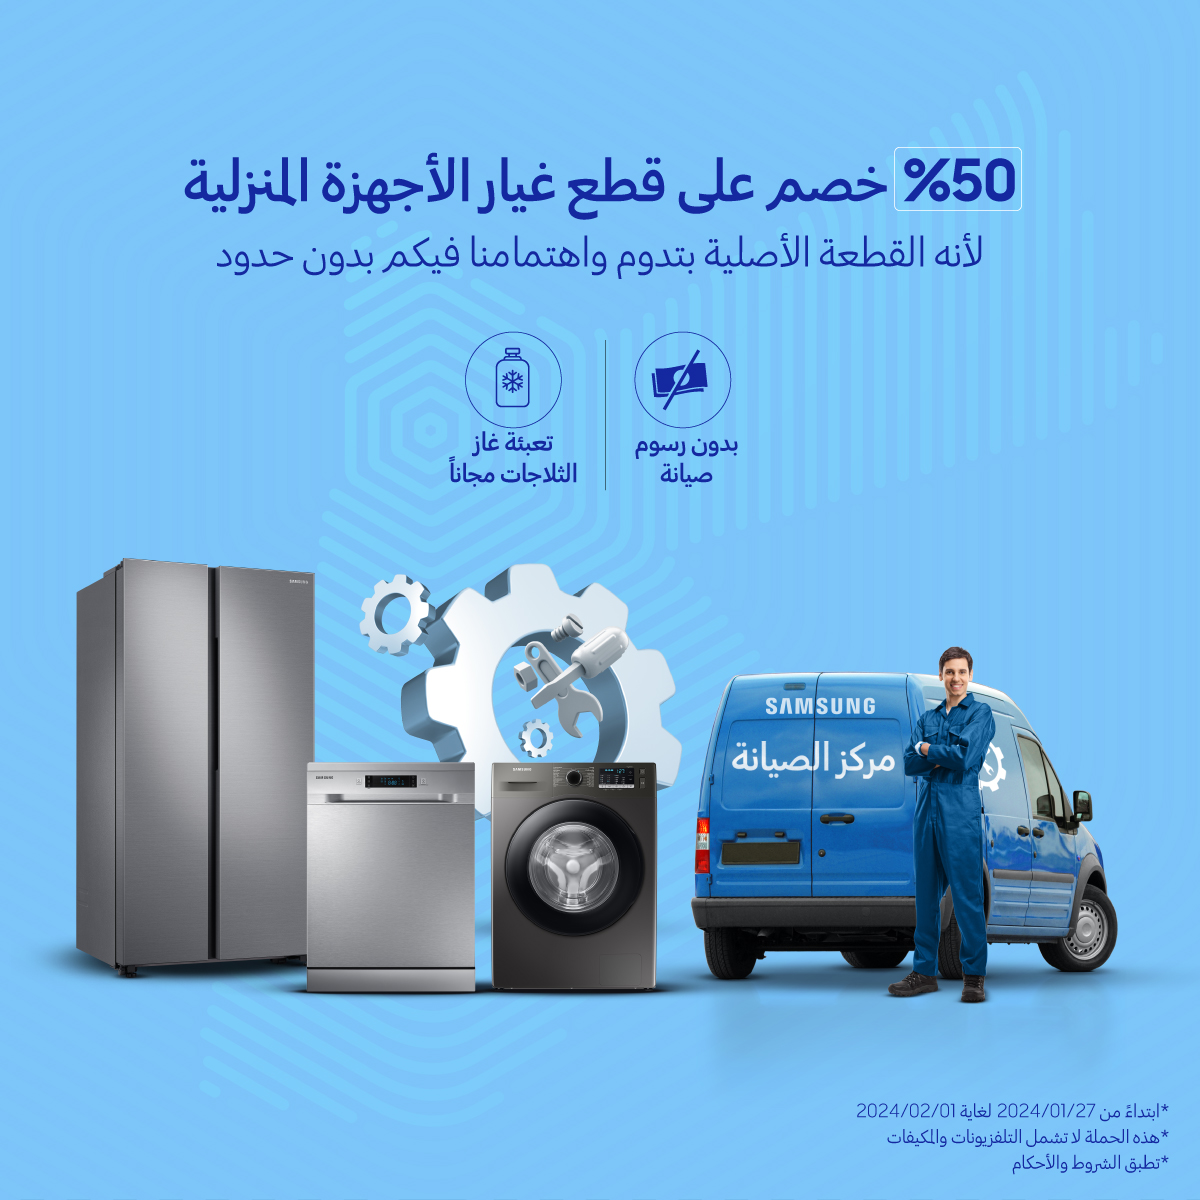 سامسونج إلكترونيكس المشرق العربي تطلق حملة خصومات بنسبة 50 على قطع غيار الأجهزة المنزلية الرقمية